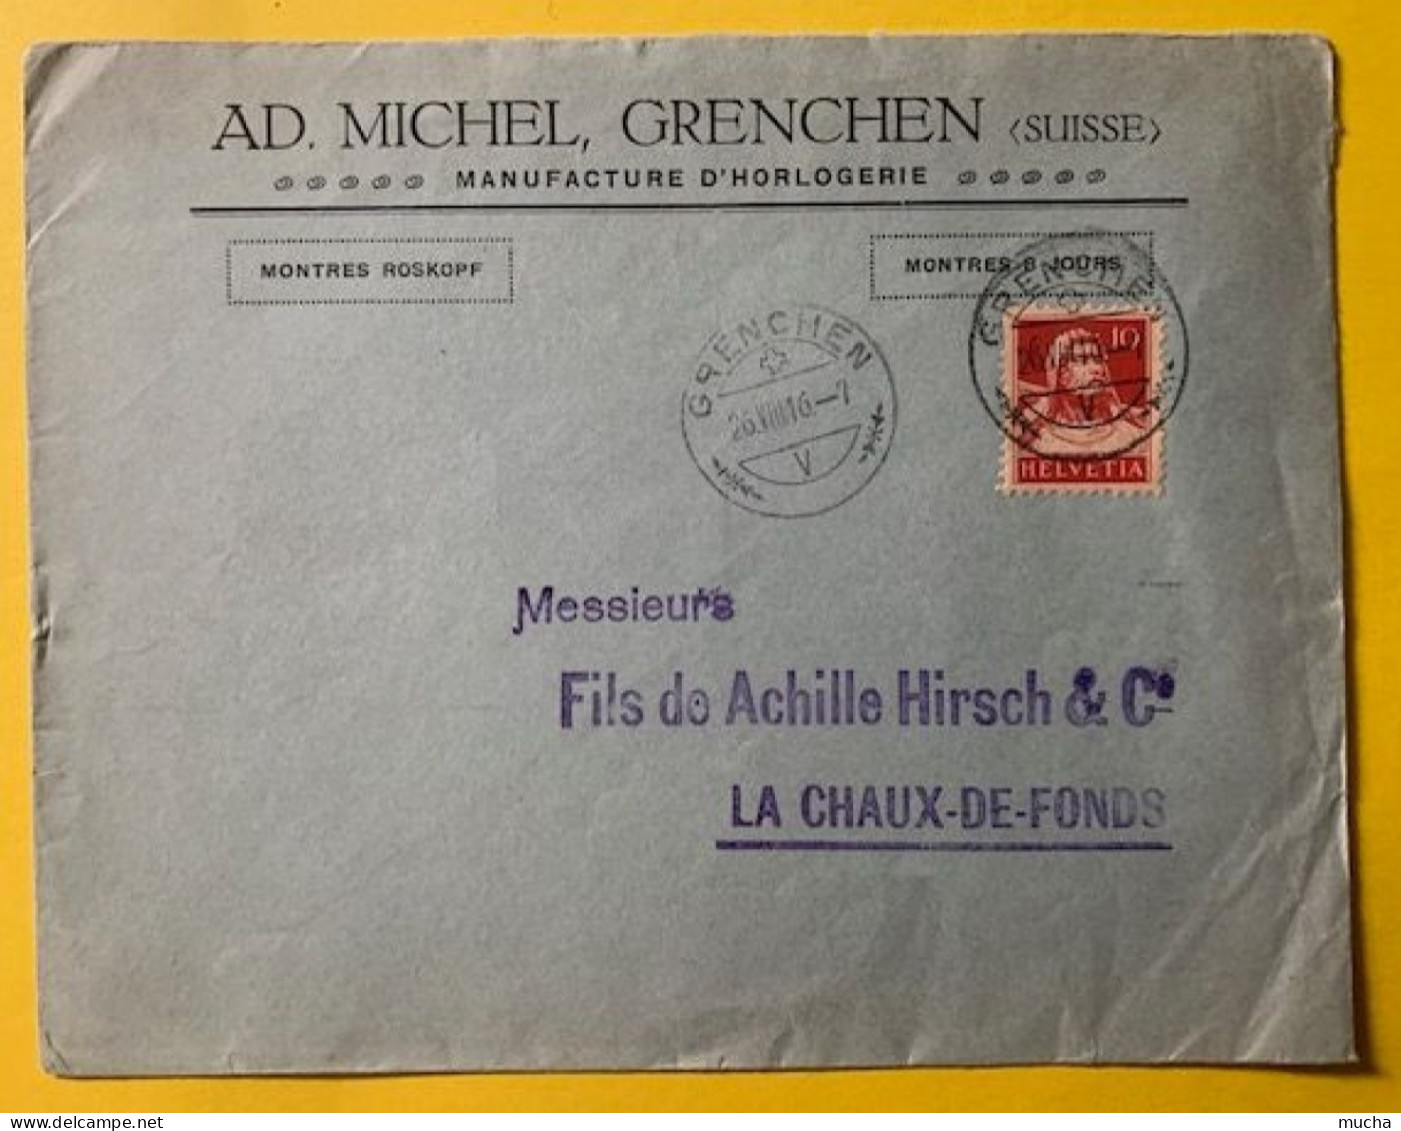 70019 - Suisse Lettre Ad. Michel Manufacture D'Horlogerie Grenchen 26.08.1916 - Clocks